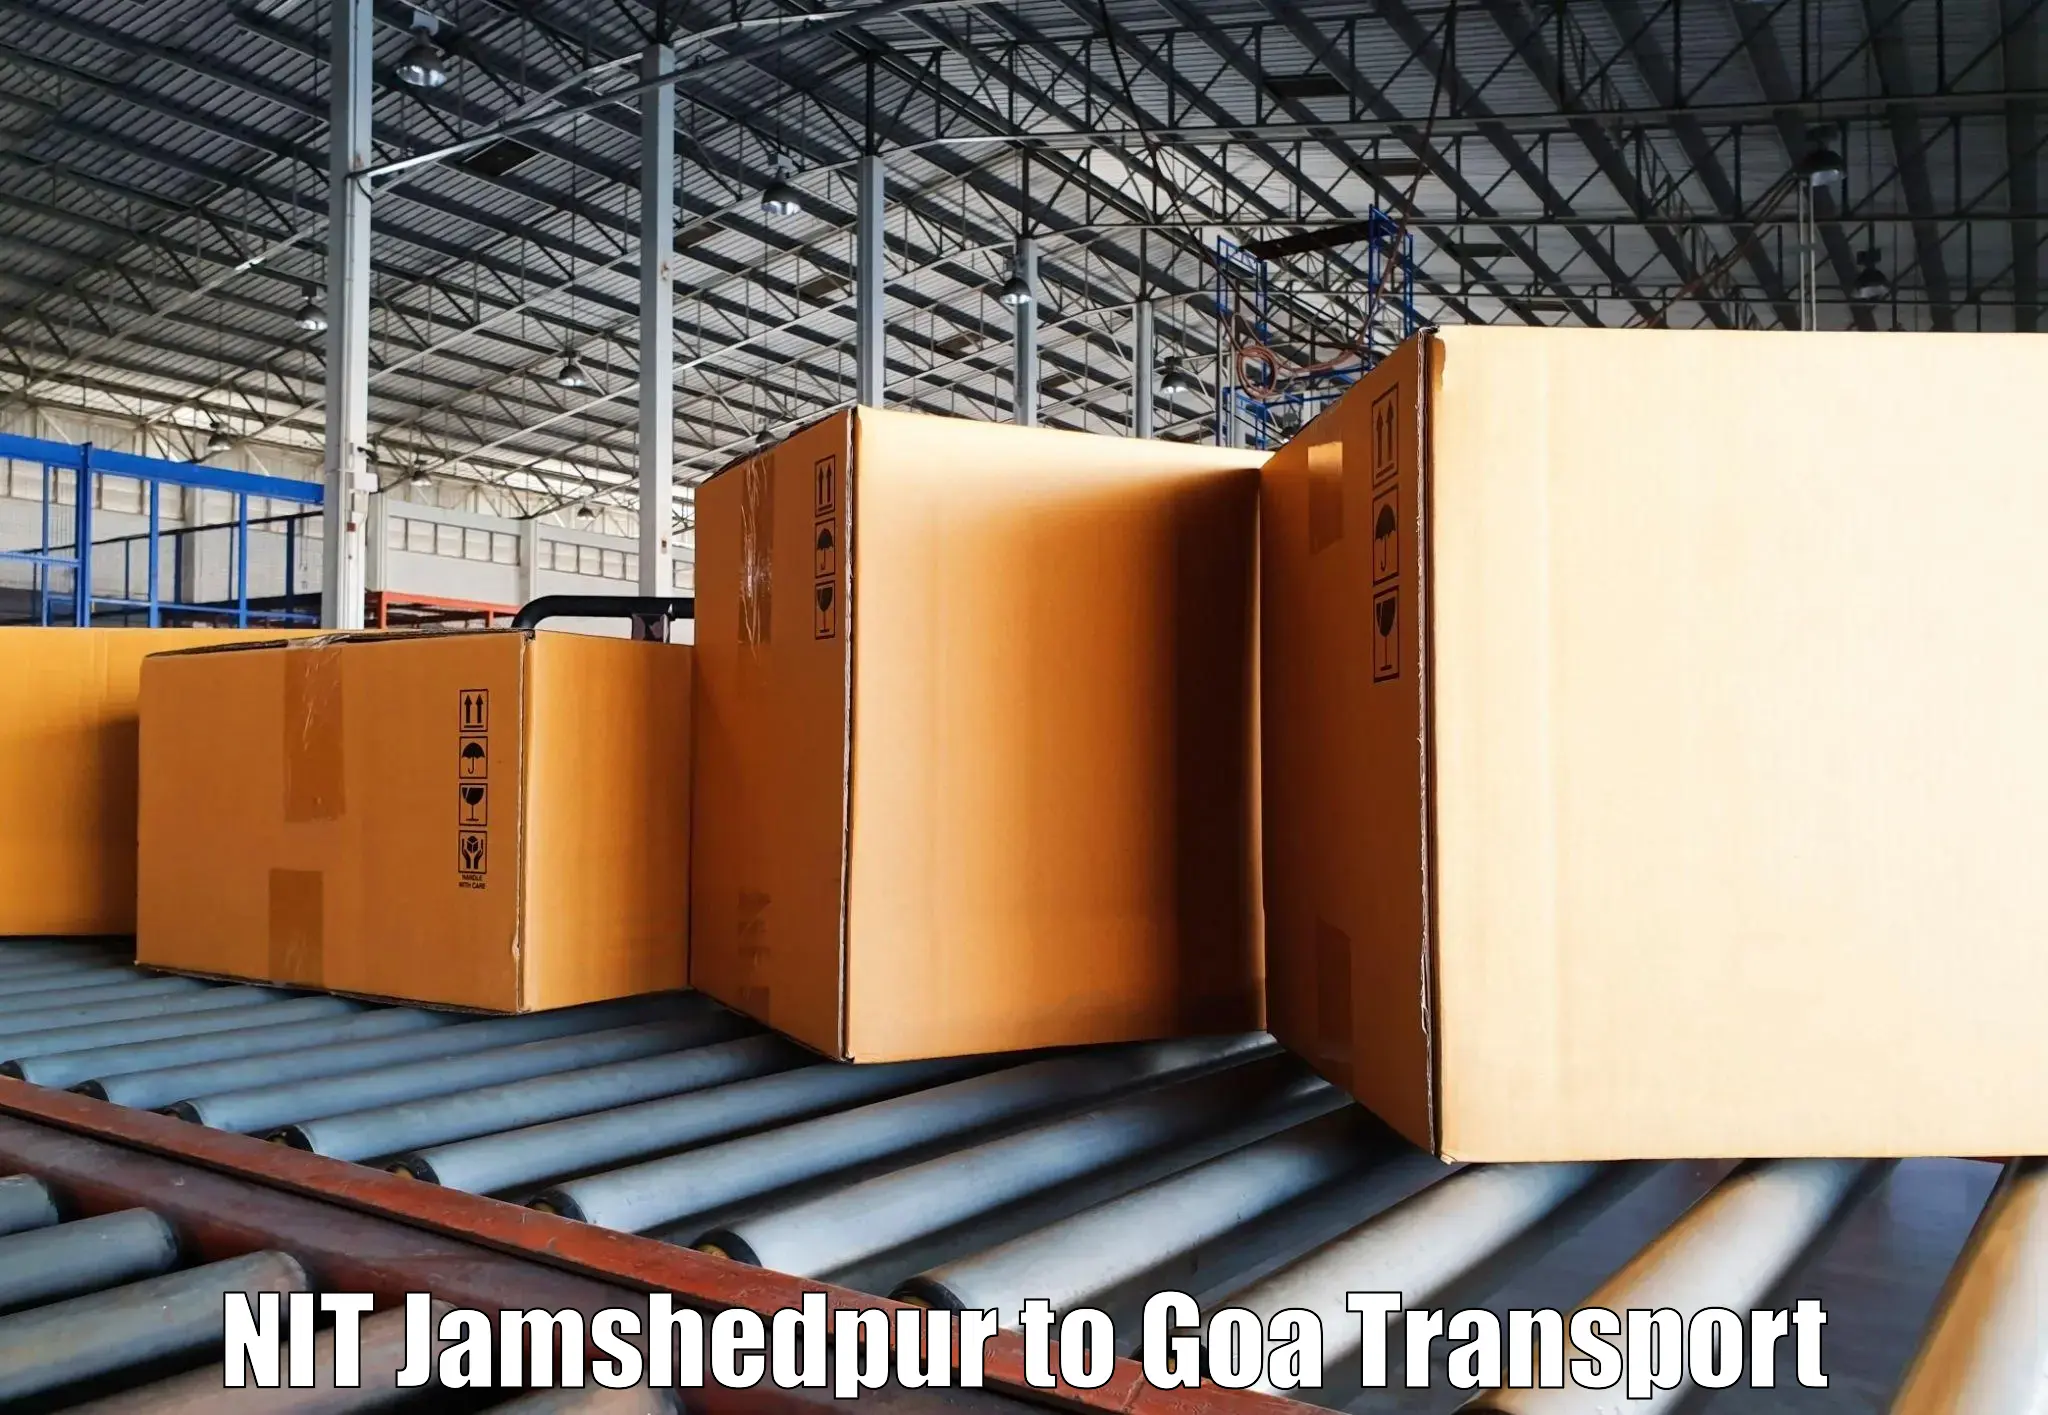 Online transport service NIT Jamshedpur to NIT Goa